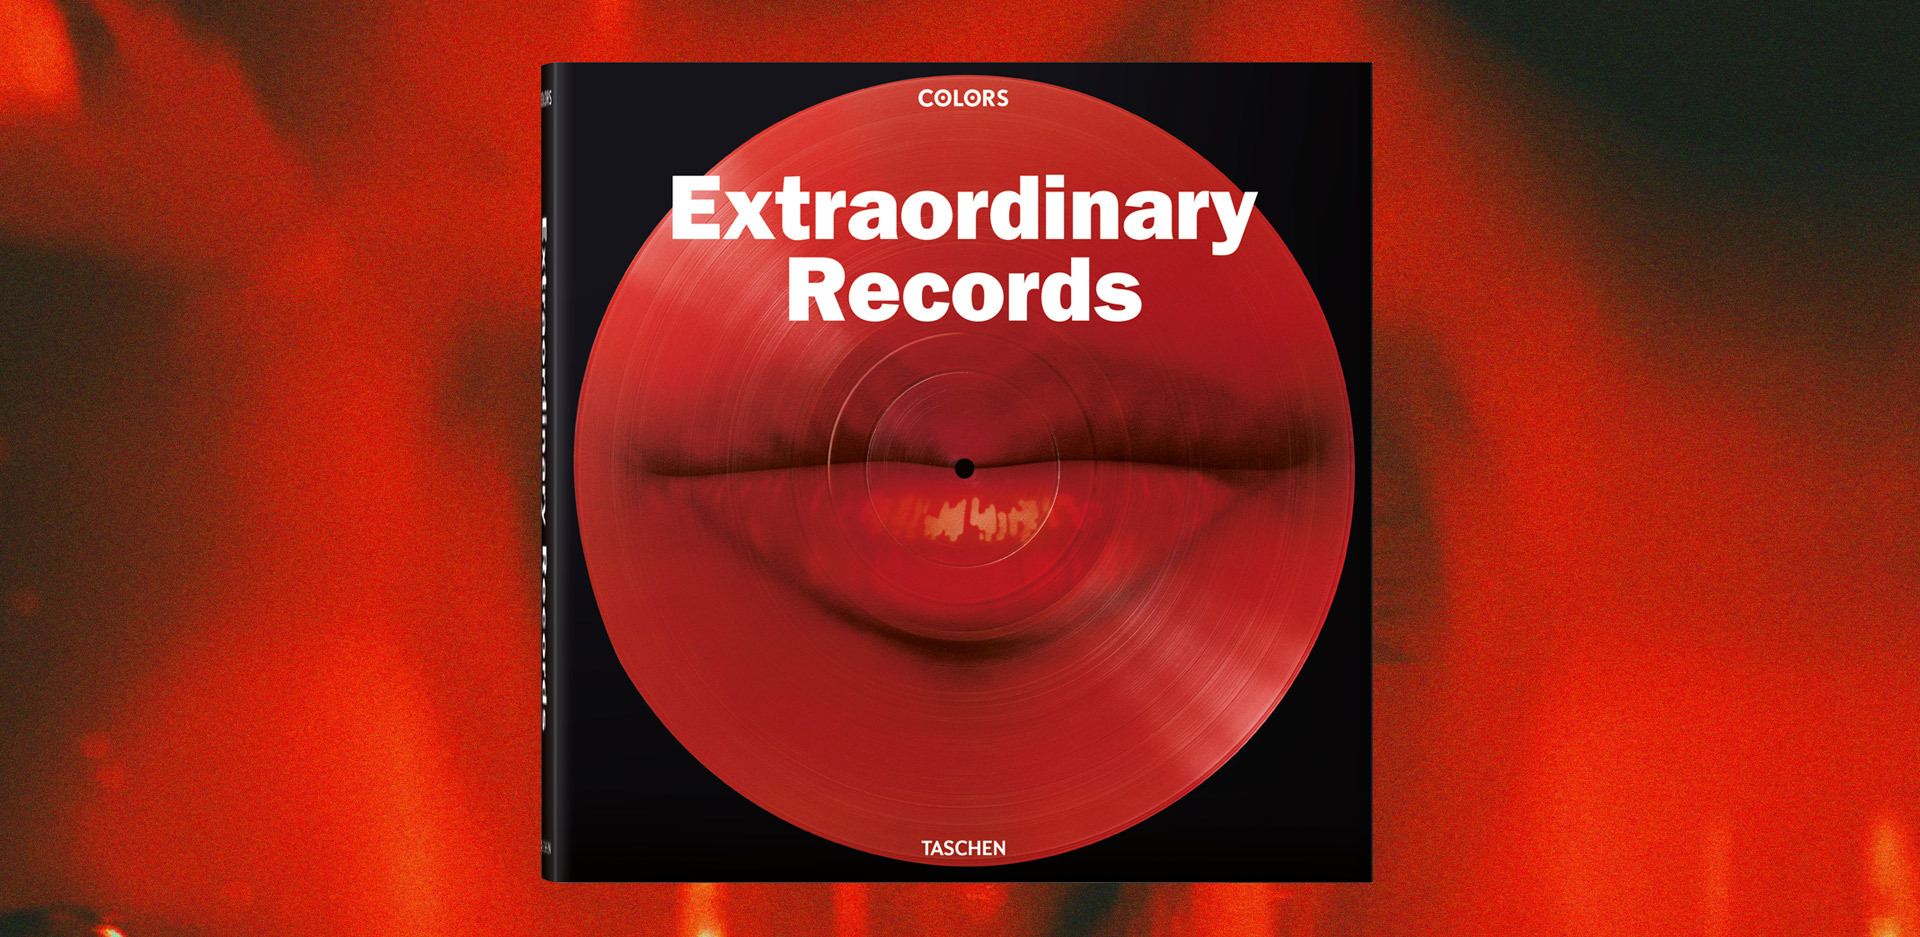 Extraordinary Records: Το λεύκωμα της Taschen με την ιστορία 500 ιστορικών άλμπουμ